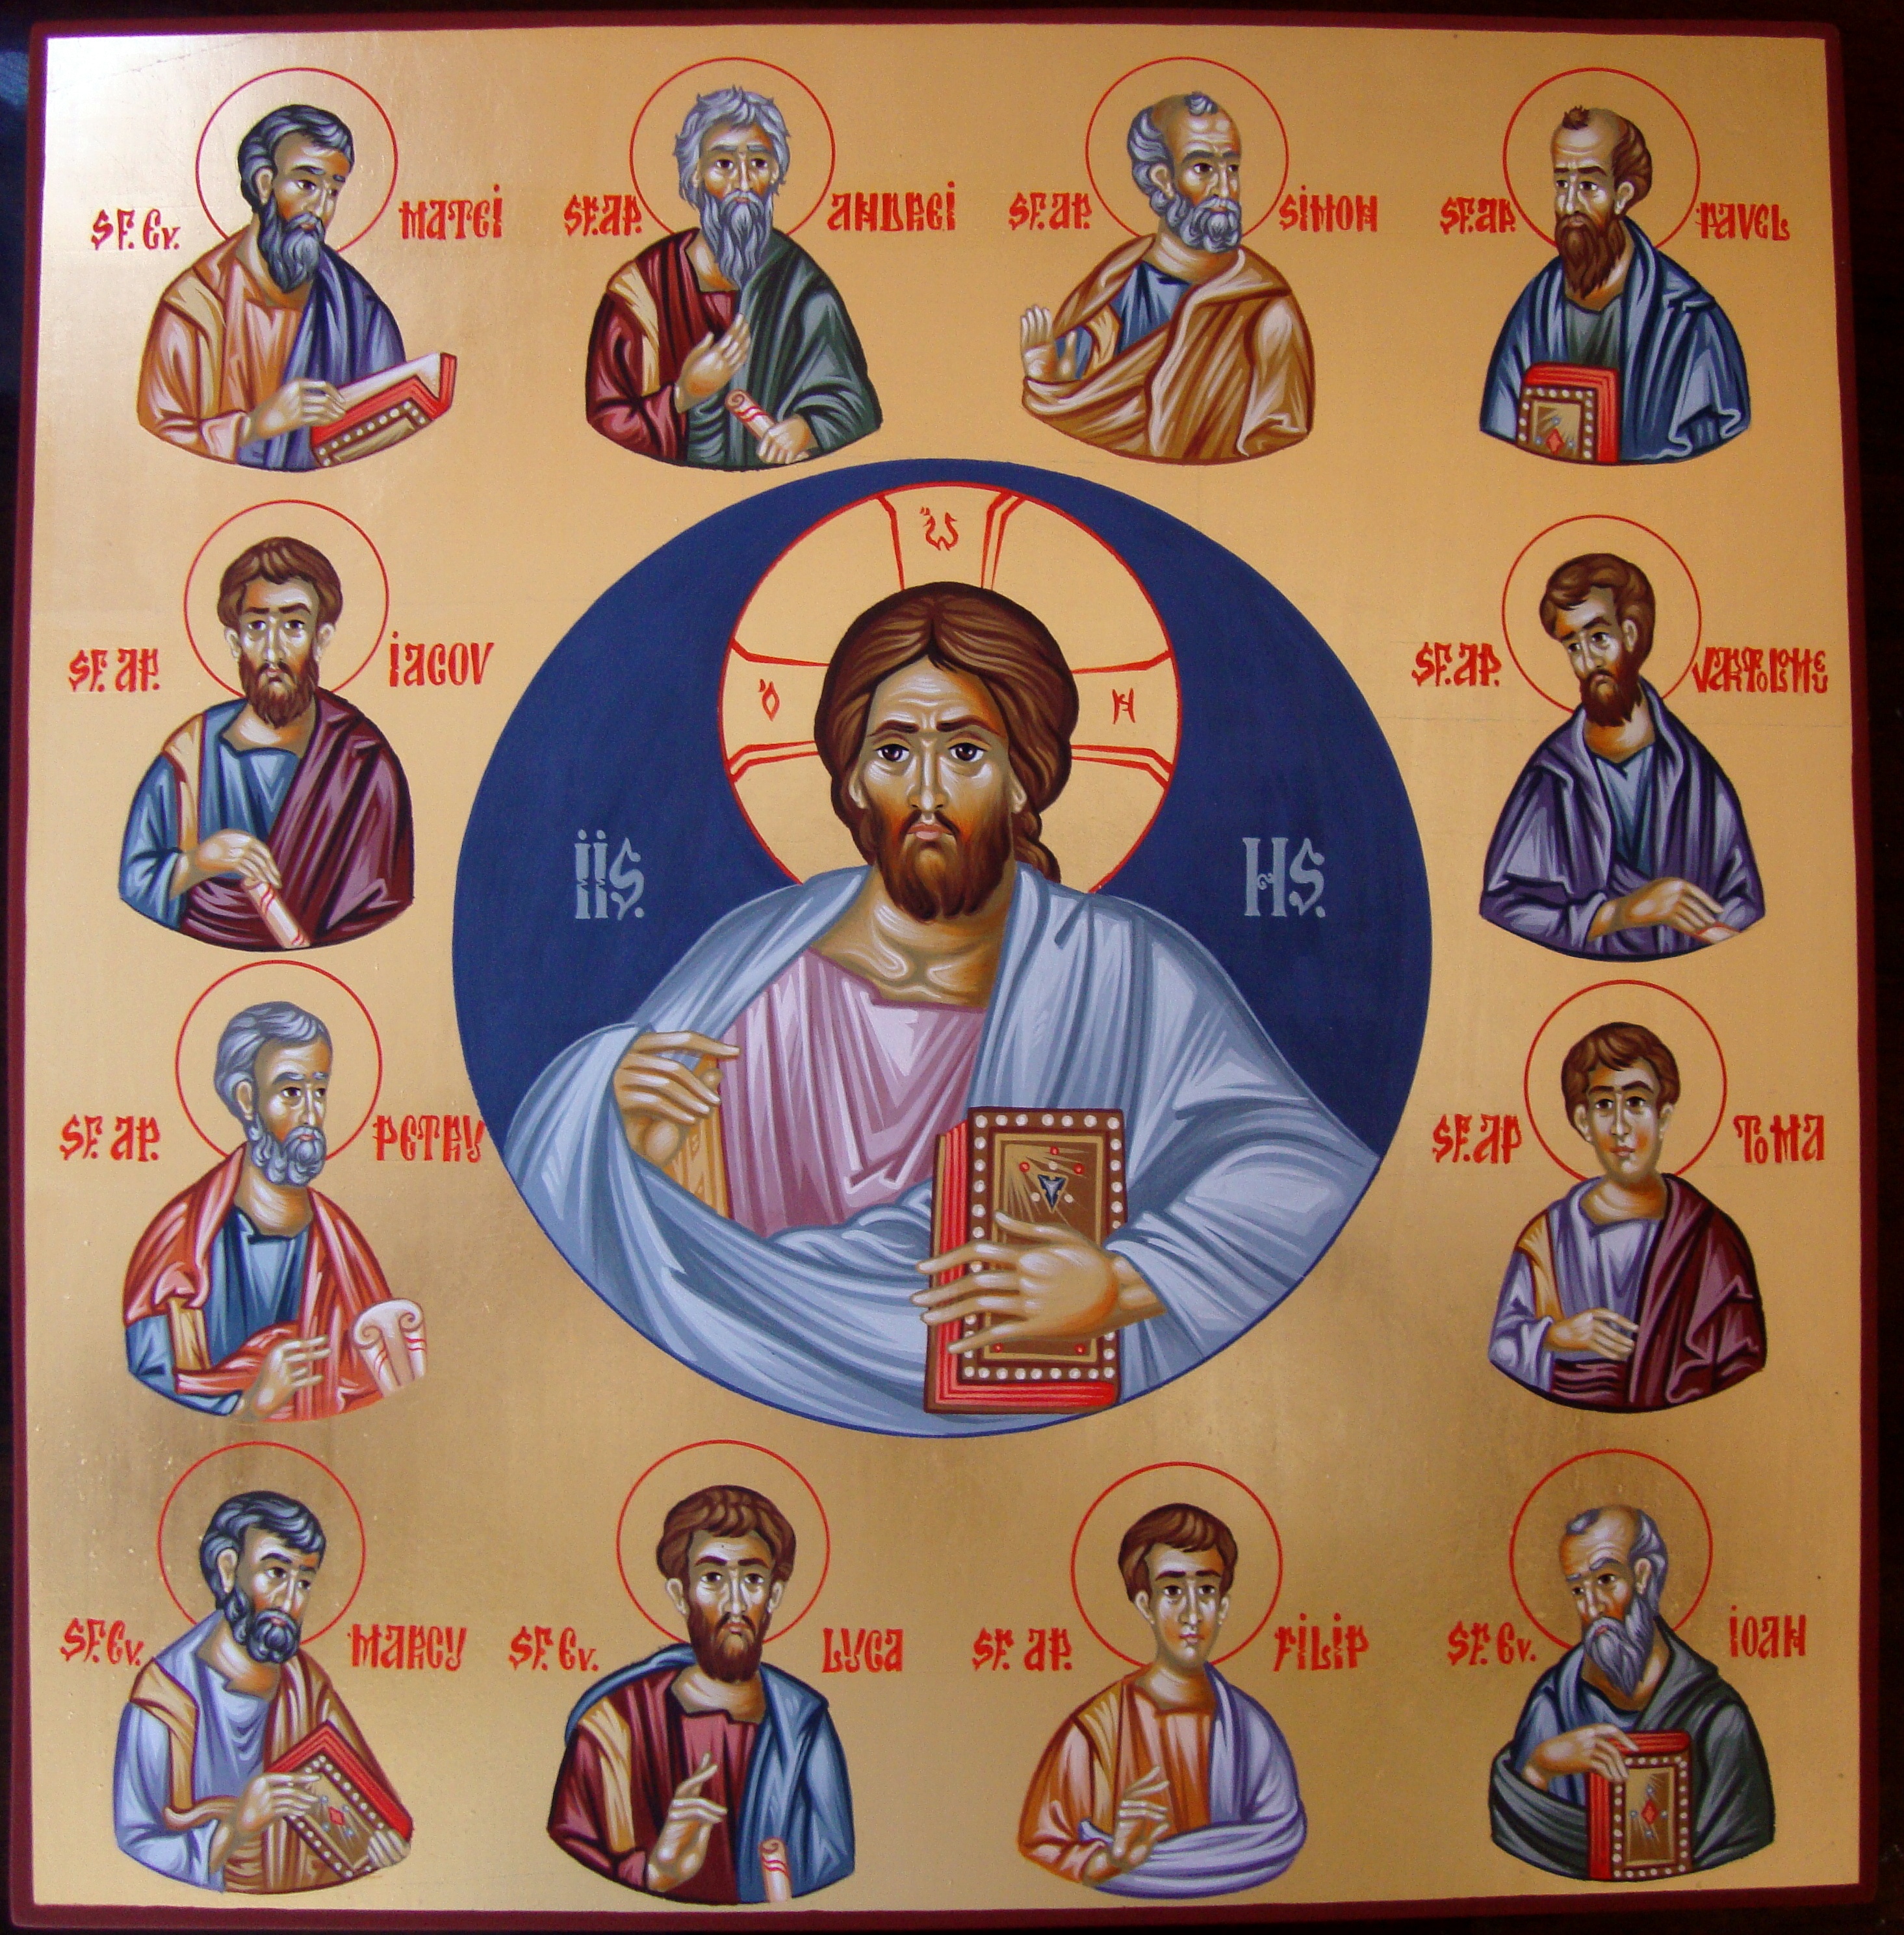 Двенадцать апостолов имена. Ученики Иисуса Христа 12 апостолов. 12 Апостолов Иисуса Христа таблица. Имена апостолов Иисуса Христа. Имена 12 апостолов Иисуса Христа.